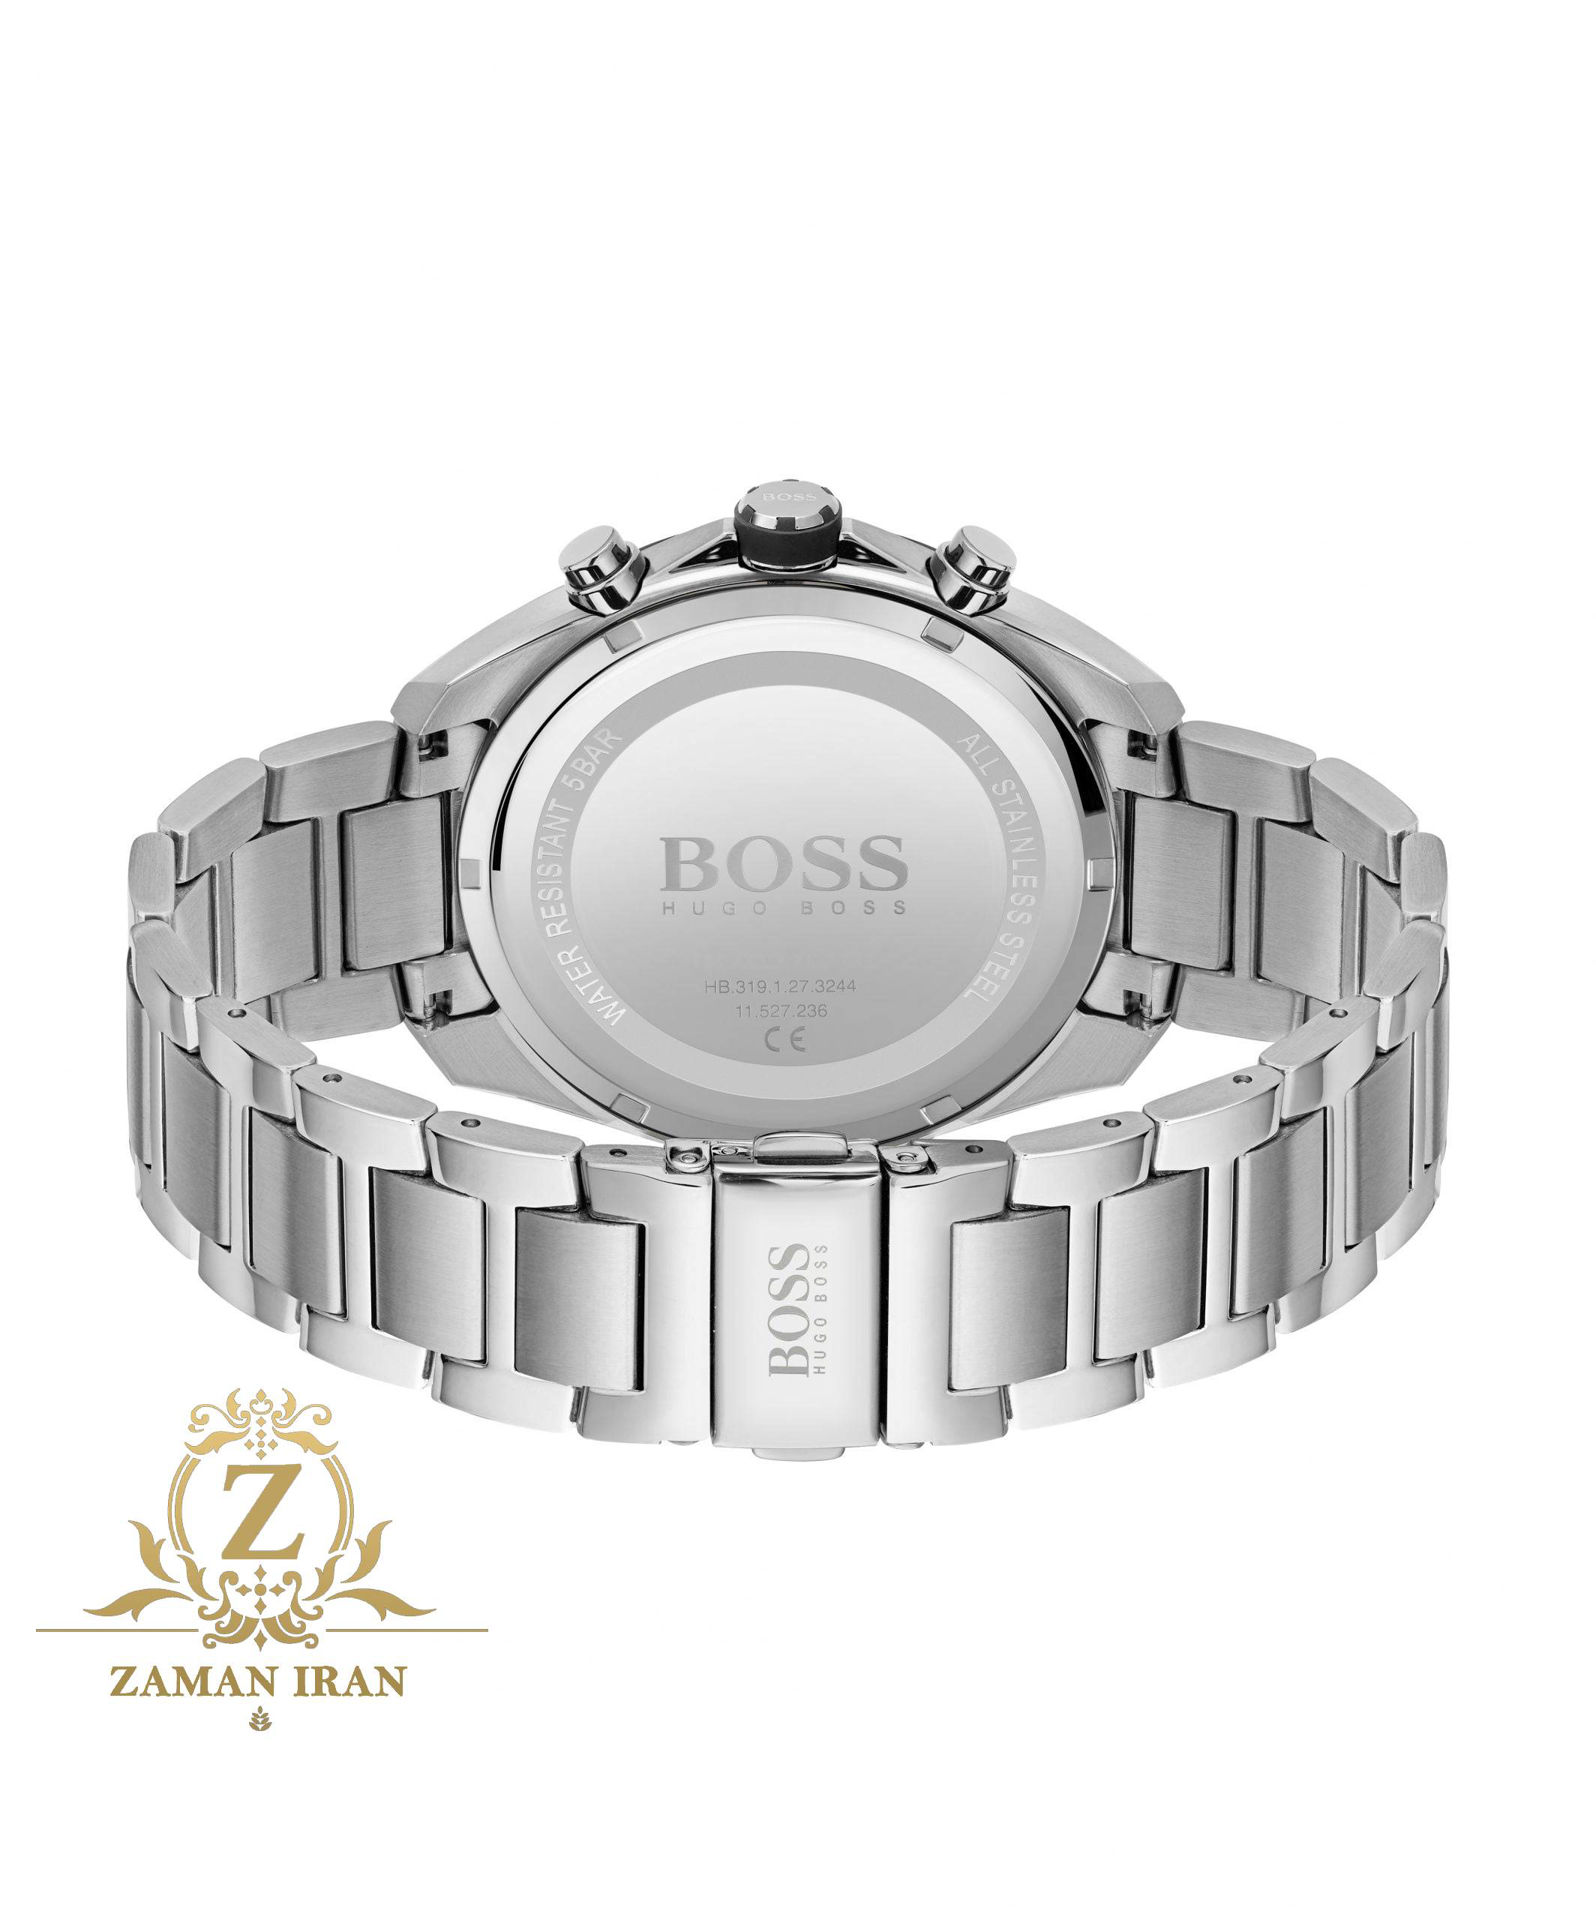 ساعت مچی مردانه هوگو بوس Hugo Boss اورجینال مدل 1513857